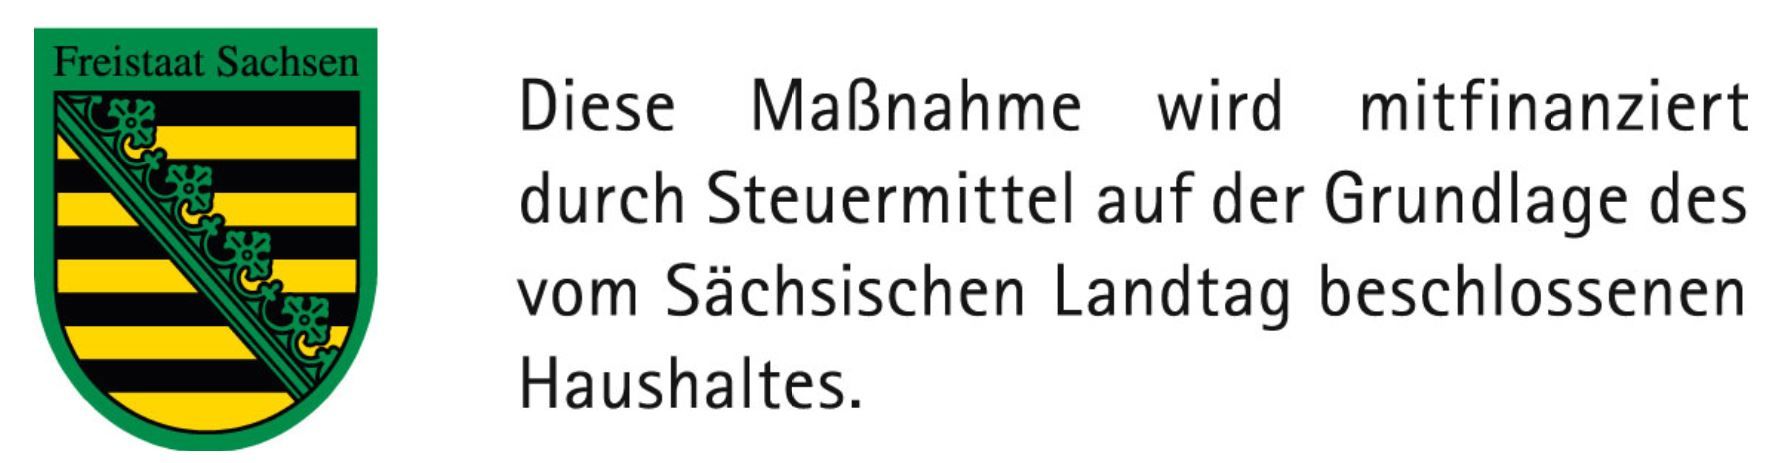 Förderhinweis: Diese Maßnahme wird mitfinanziert durch Steuermittel auf Grundlage des vom Sächsischen Landtag beschlossenen Haushaltes.